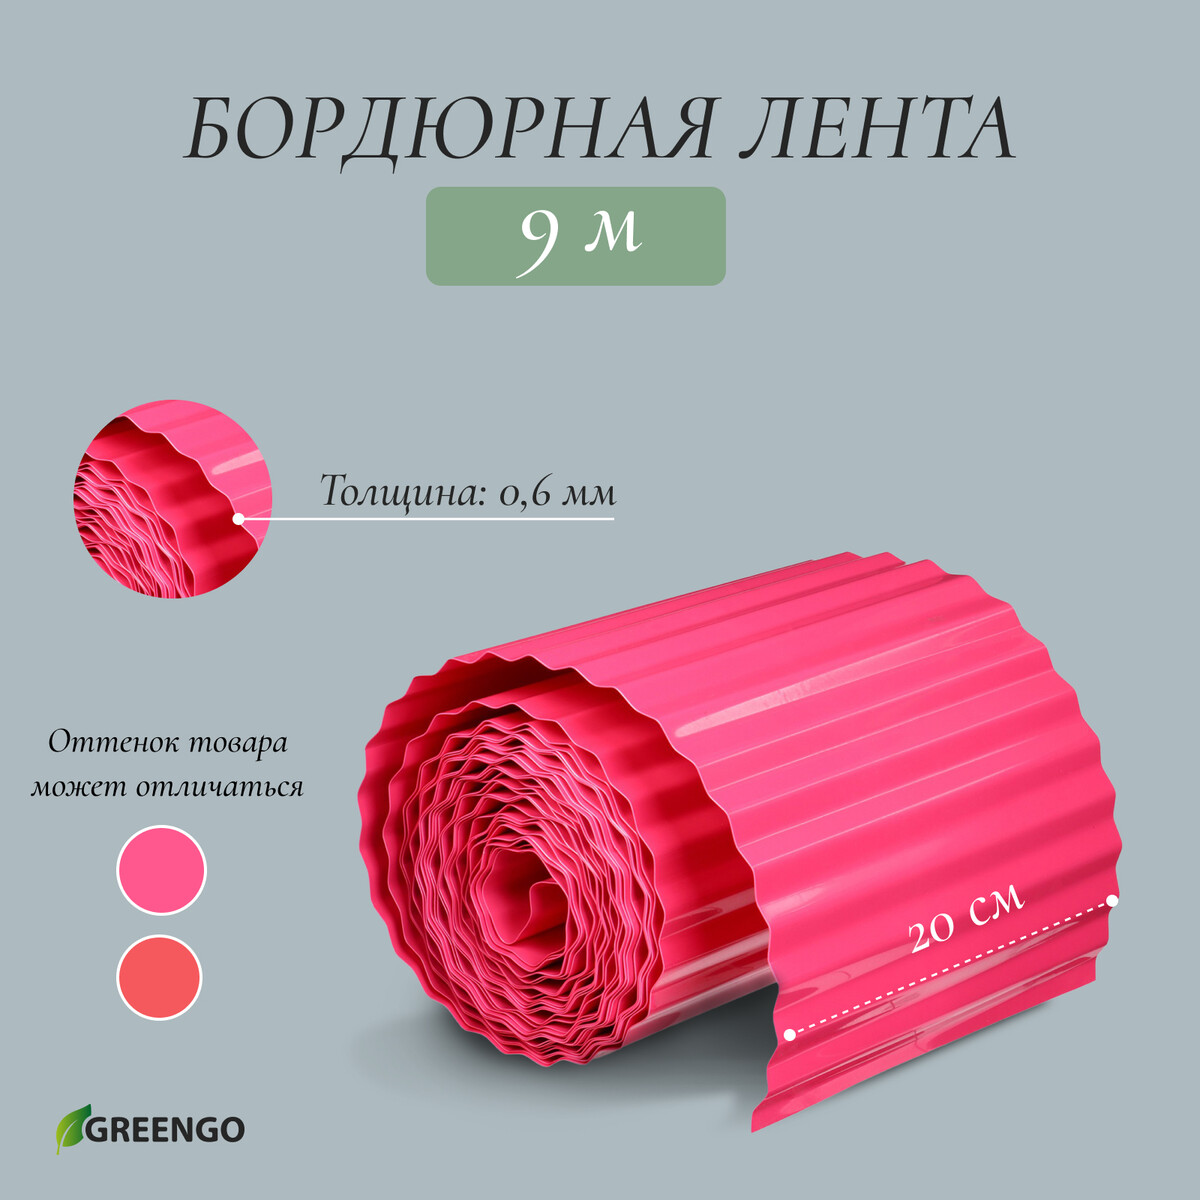 Лента бордюрная, 0.2 × 9 м, толщина 0.6 мм, пластиковая, гофра, розовая, greengo